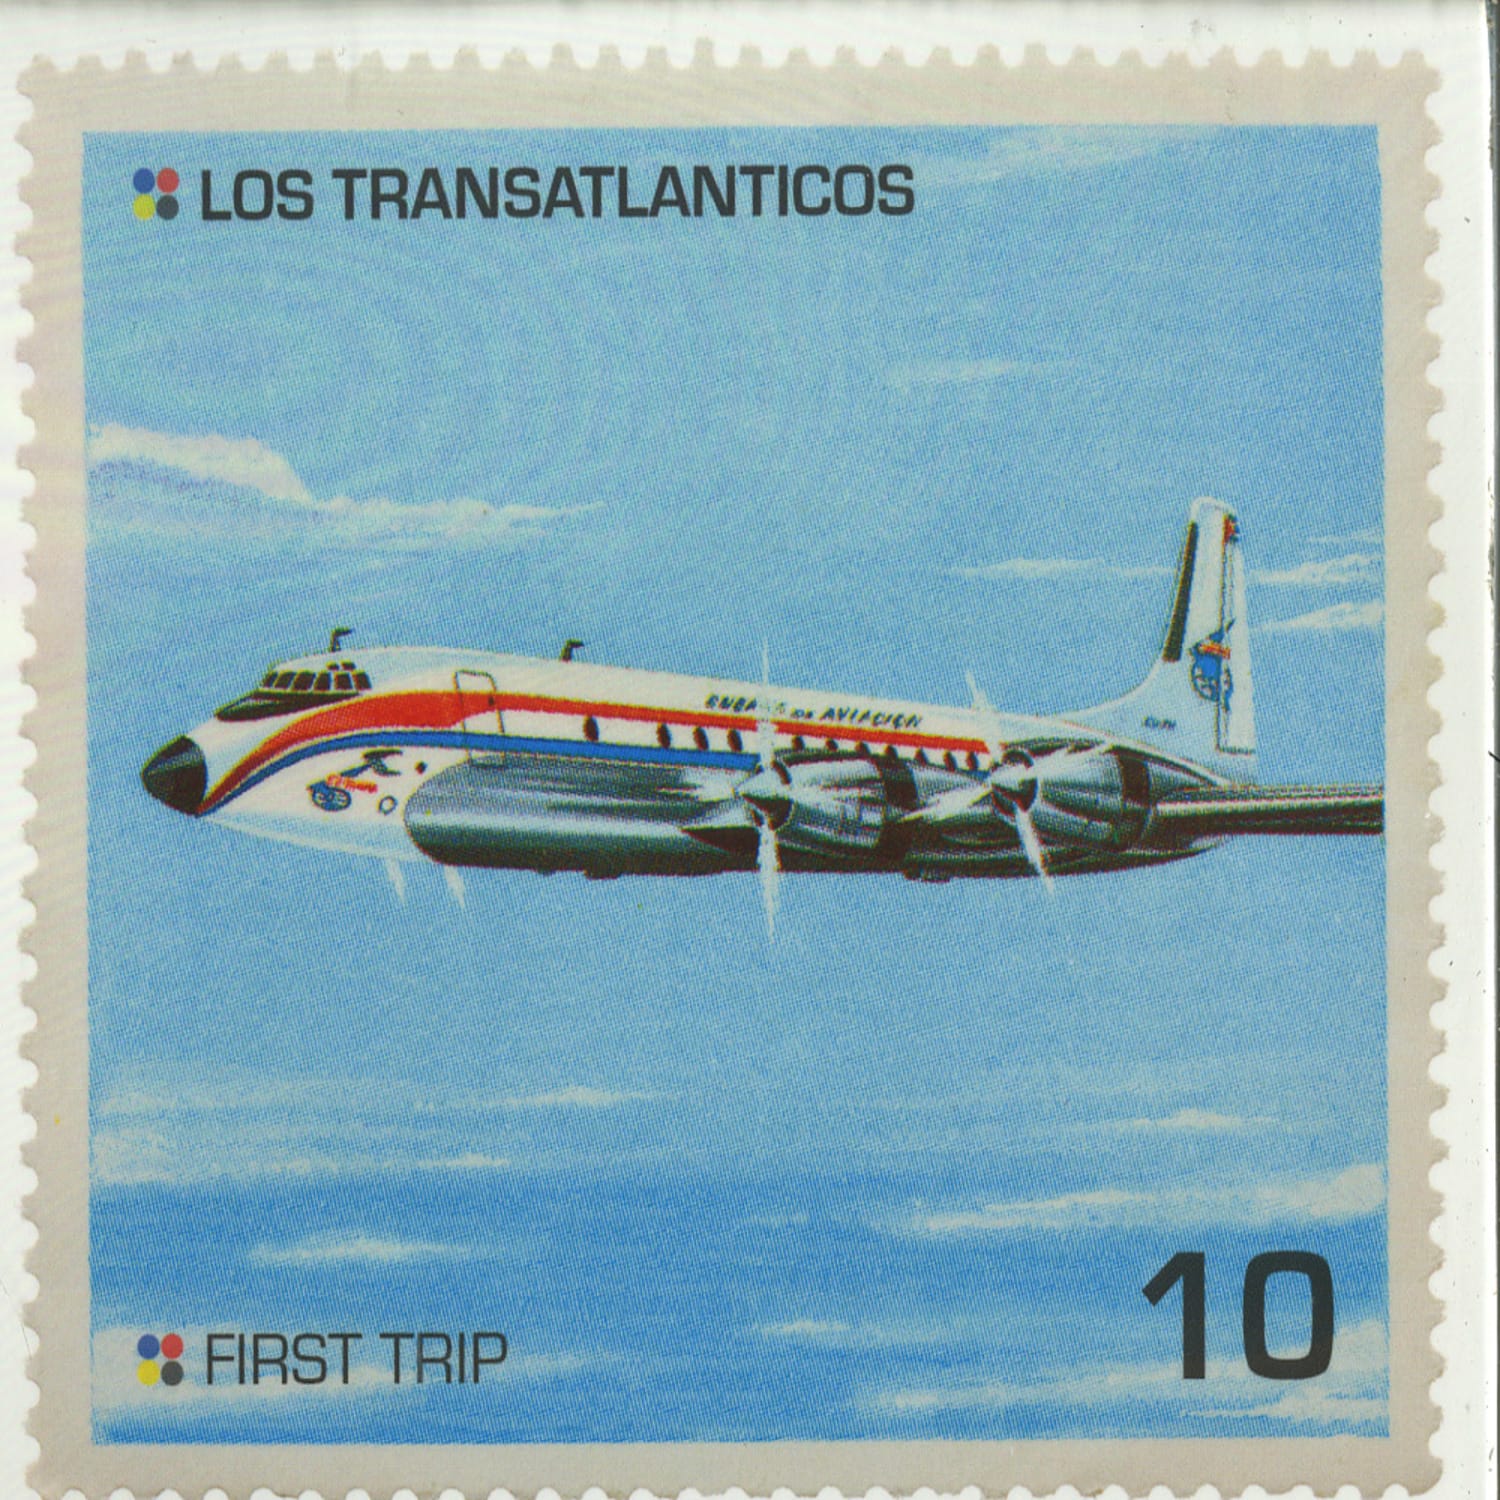 Los Transatlanticos - FIRST TRIP 